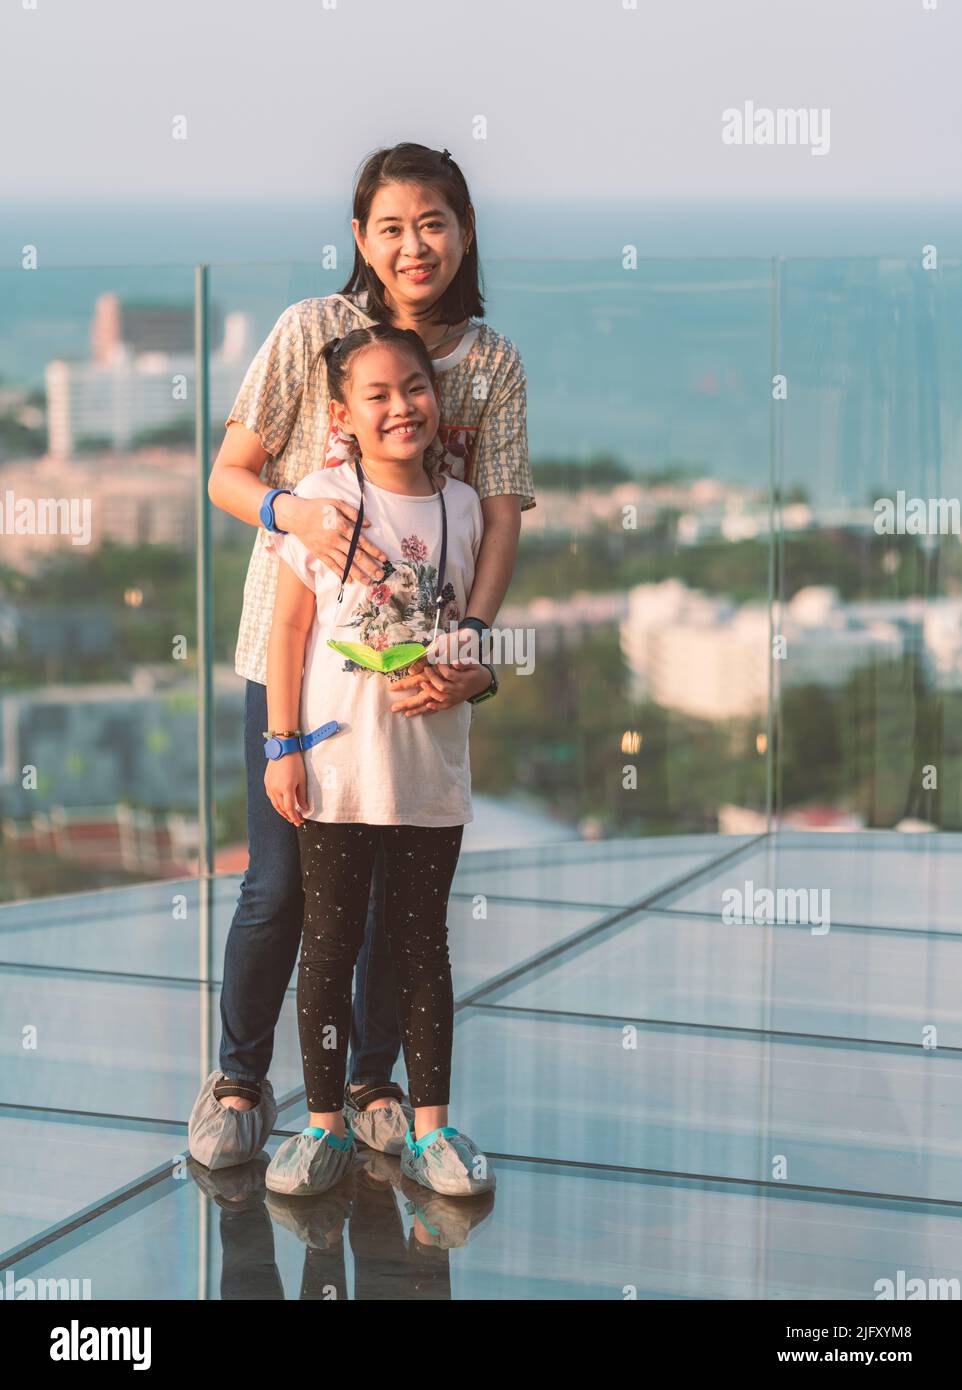 Glücklich und aufgeregt stehen die asiatische Mutter mittleren Alters und die kleine Tochter auf einem Glasboden auf einem hohen Gebäude, voller Körper, lächelndes Gesicht, verschwommener Rücken Stockfoto